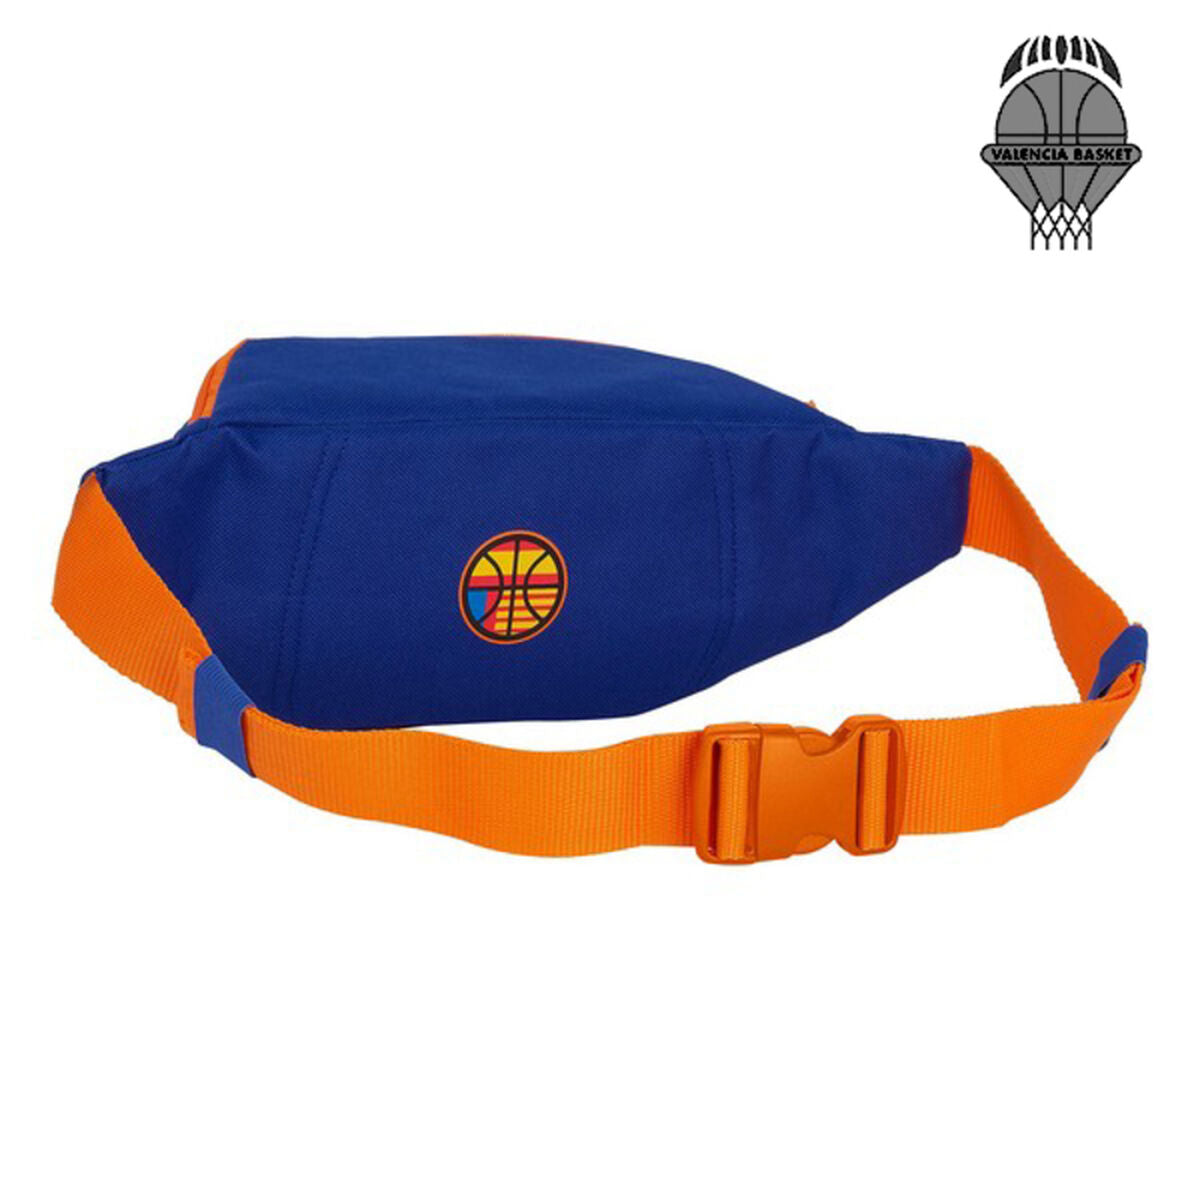 Heuptas Valencia Basket Blauw Oranje (23 x 12 x 9 cm)